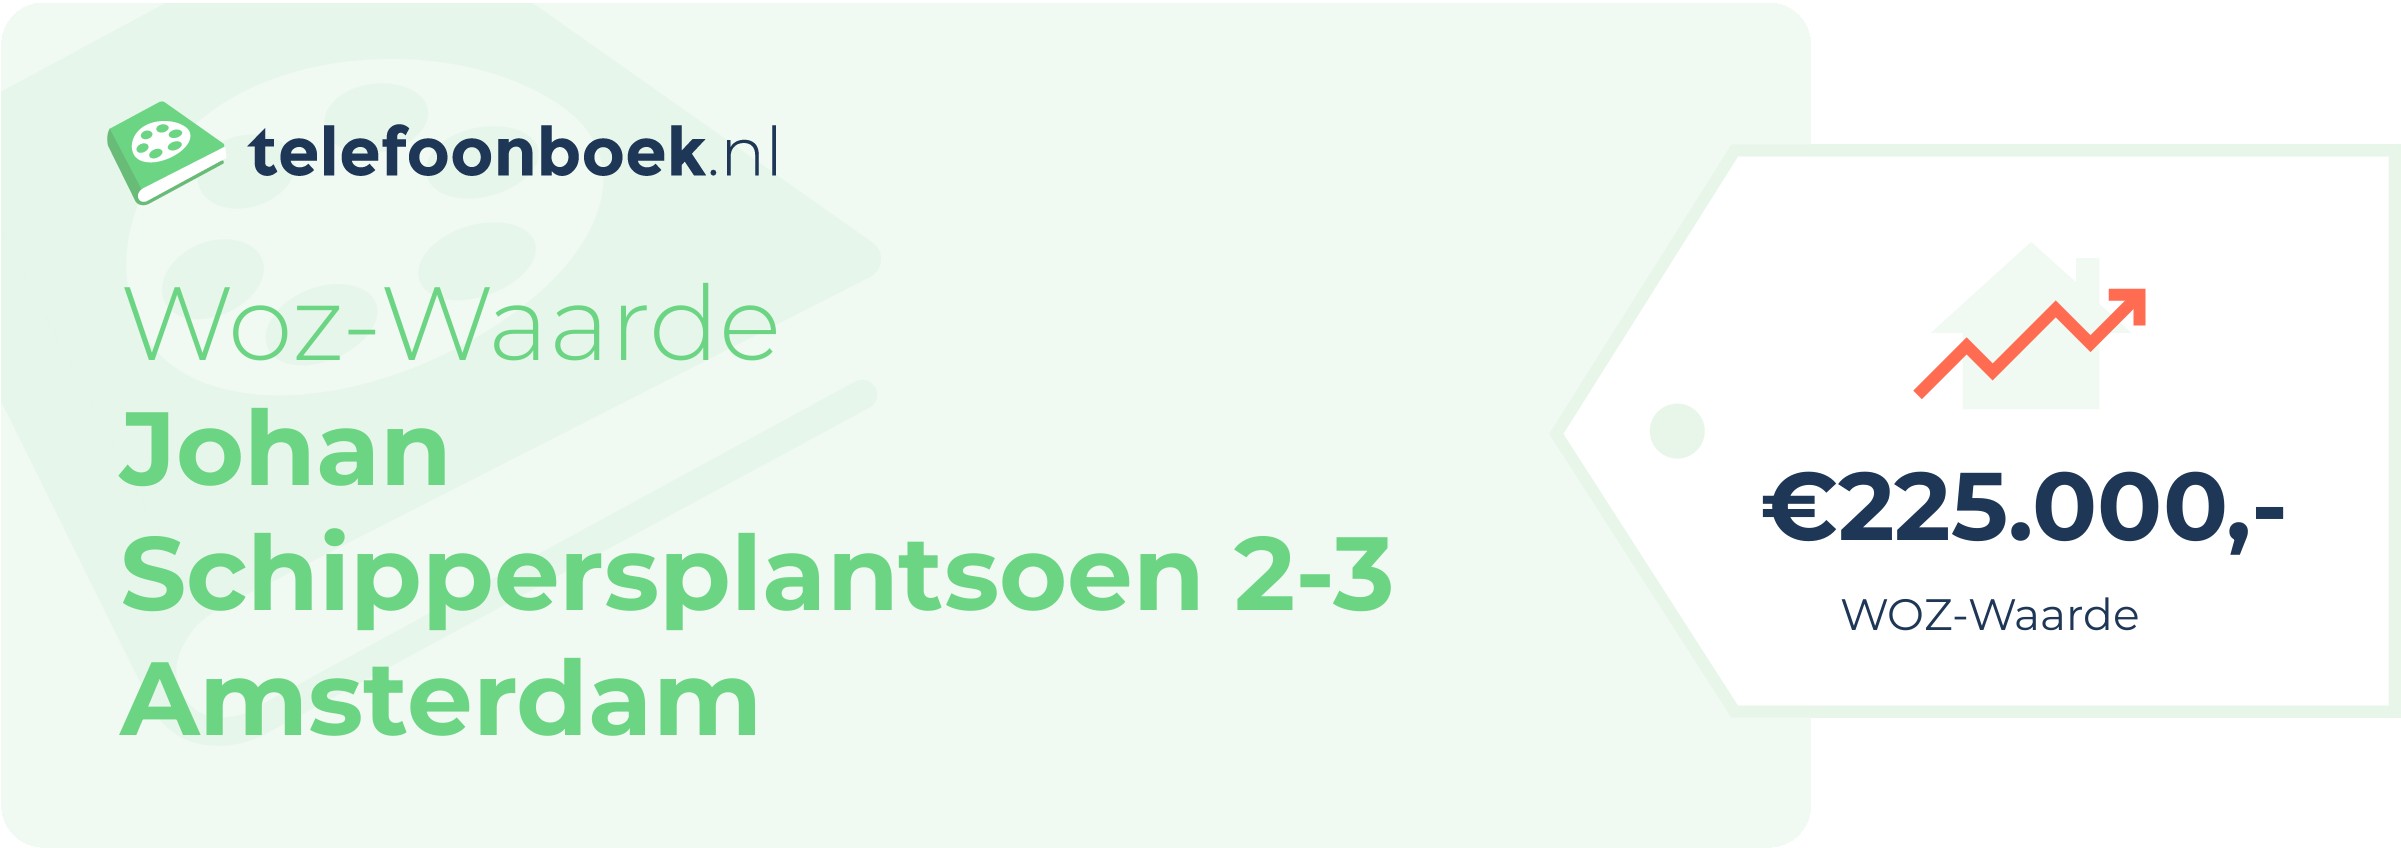 WOZ-waarde Johan Schippersplantsoen 2-3 Amsterdam